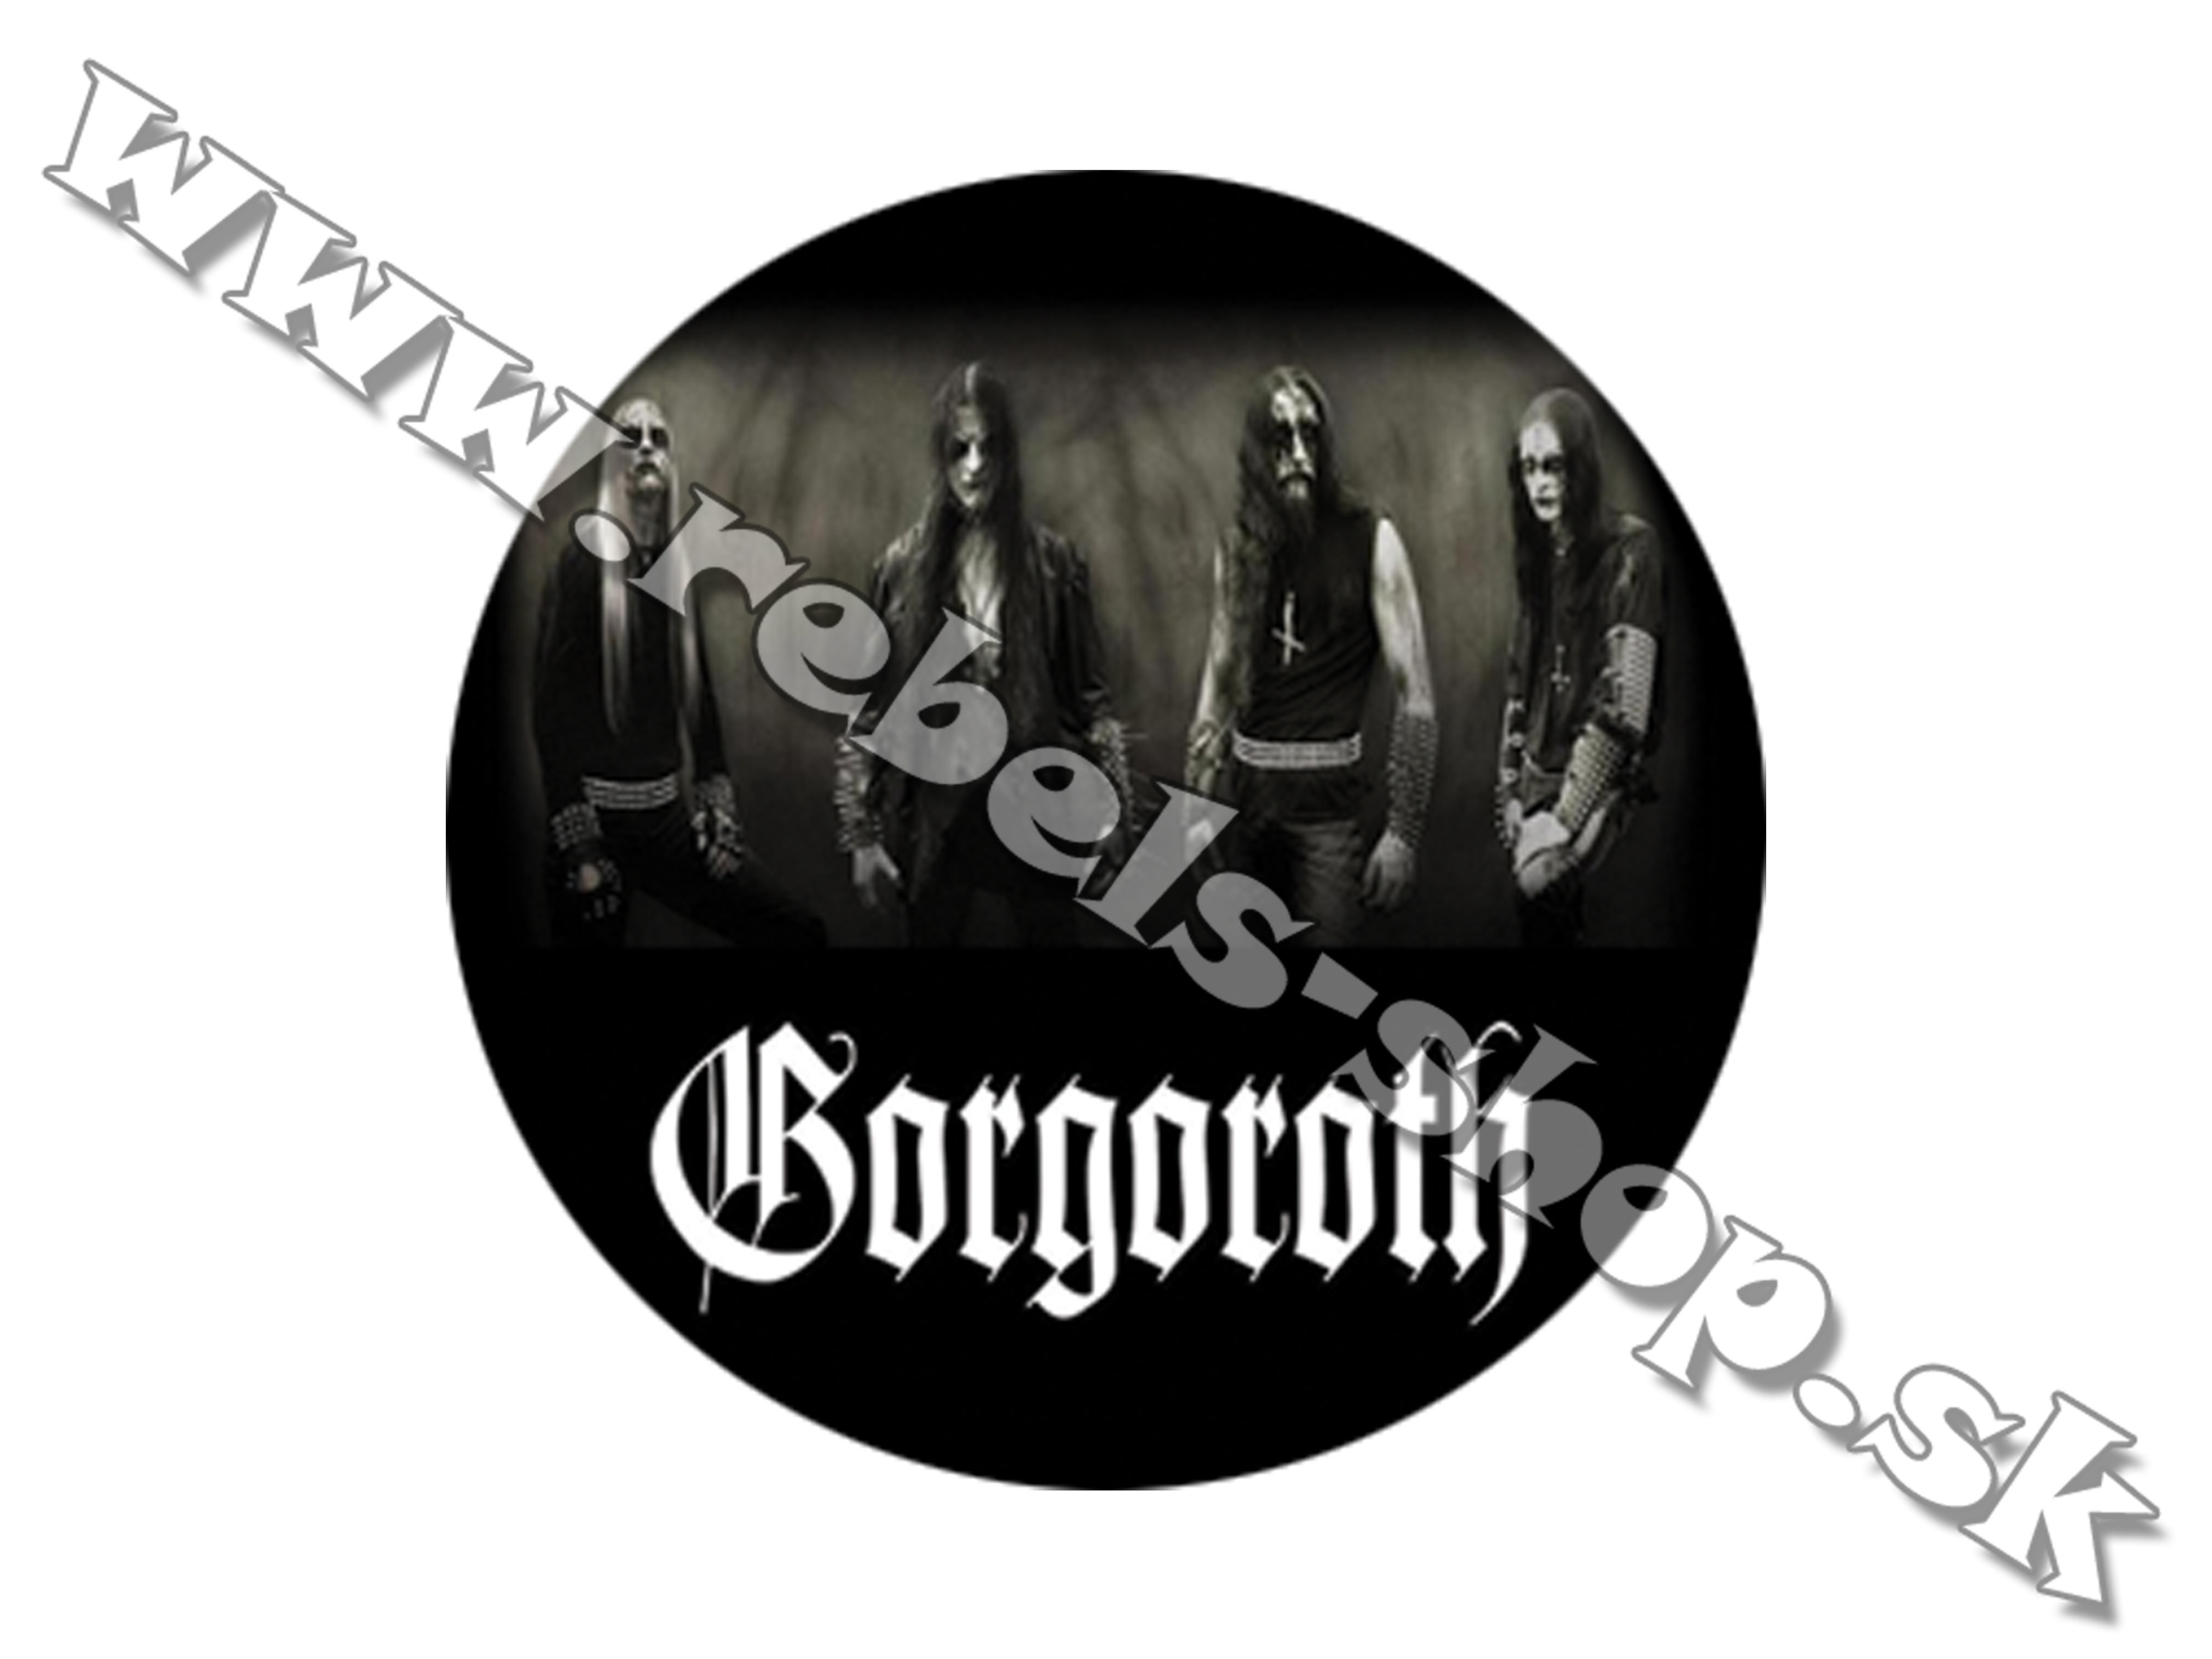 Odznak "Gorgoroth"